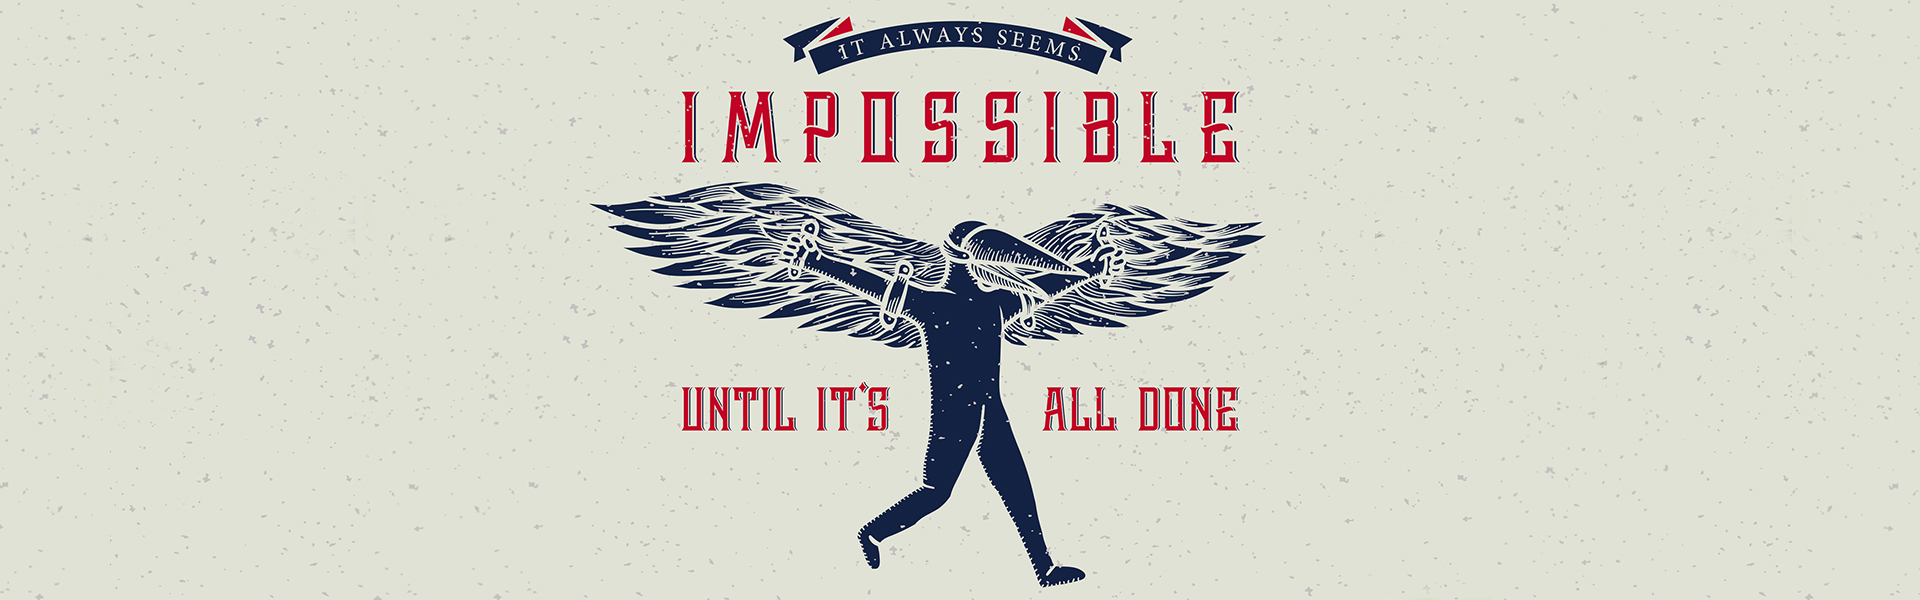 Logo aus Figur mit selbstgebauten Holzflügeln und Slogan "It always seems impossible until it's all done"